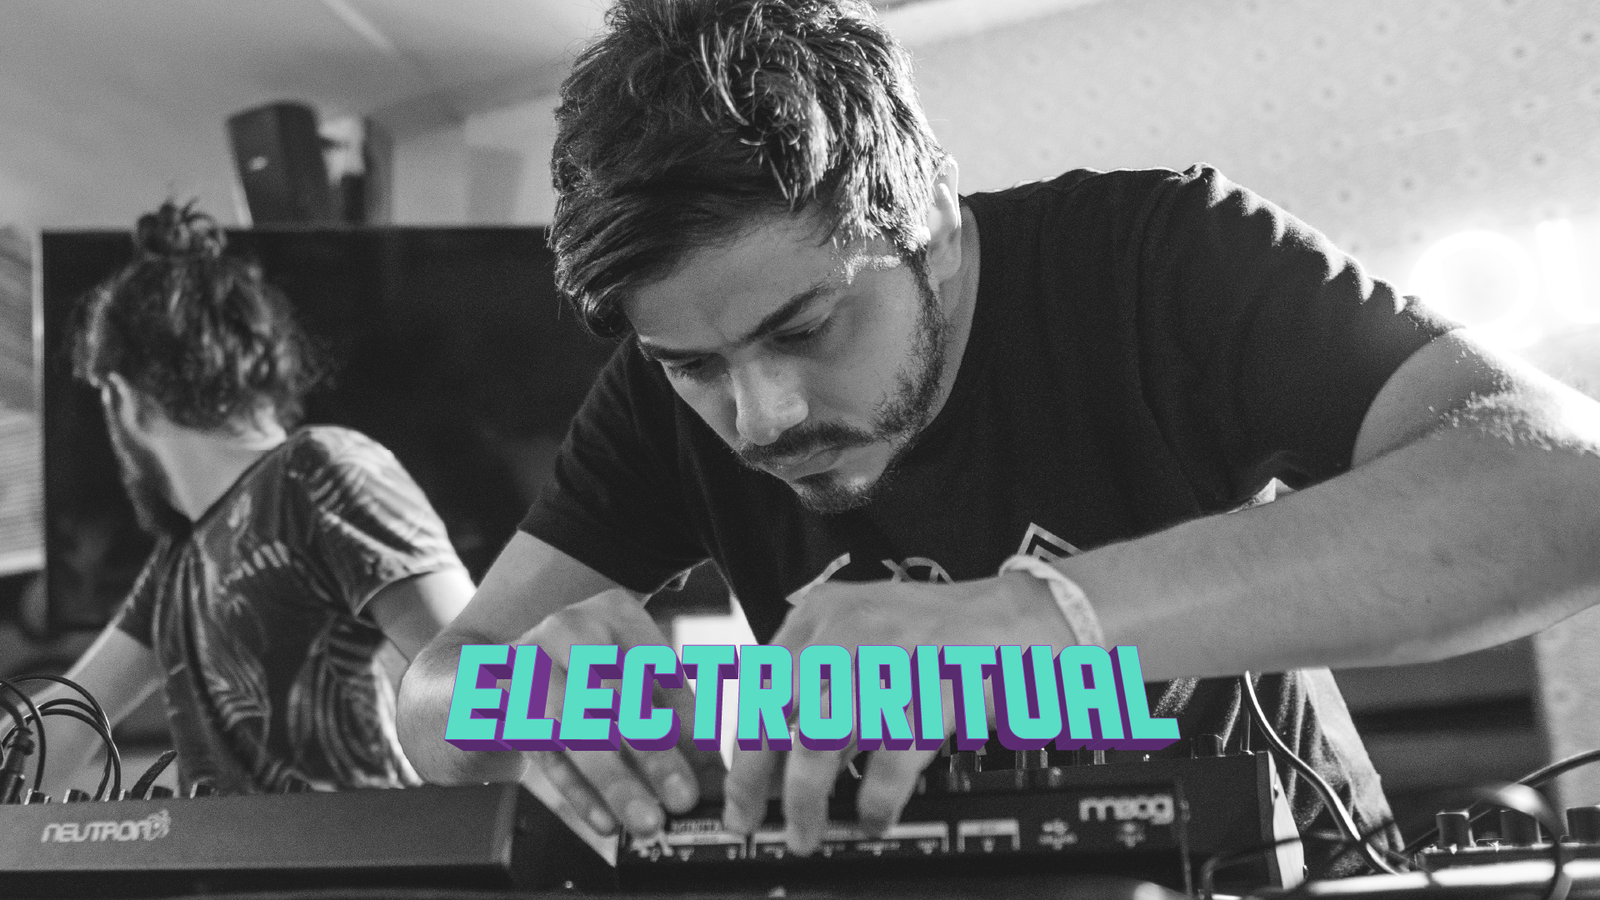 Creamos la gira de eventos Electroritual, con el cuál hemos llevado a nuestros artistas de música electrónica a recorrer Colombia y hemos abierto espacios para artistas de todo el país